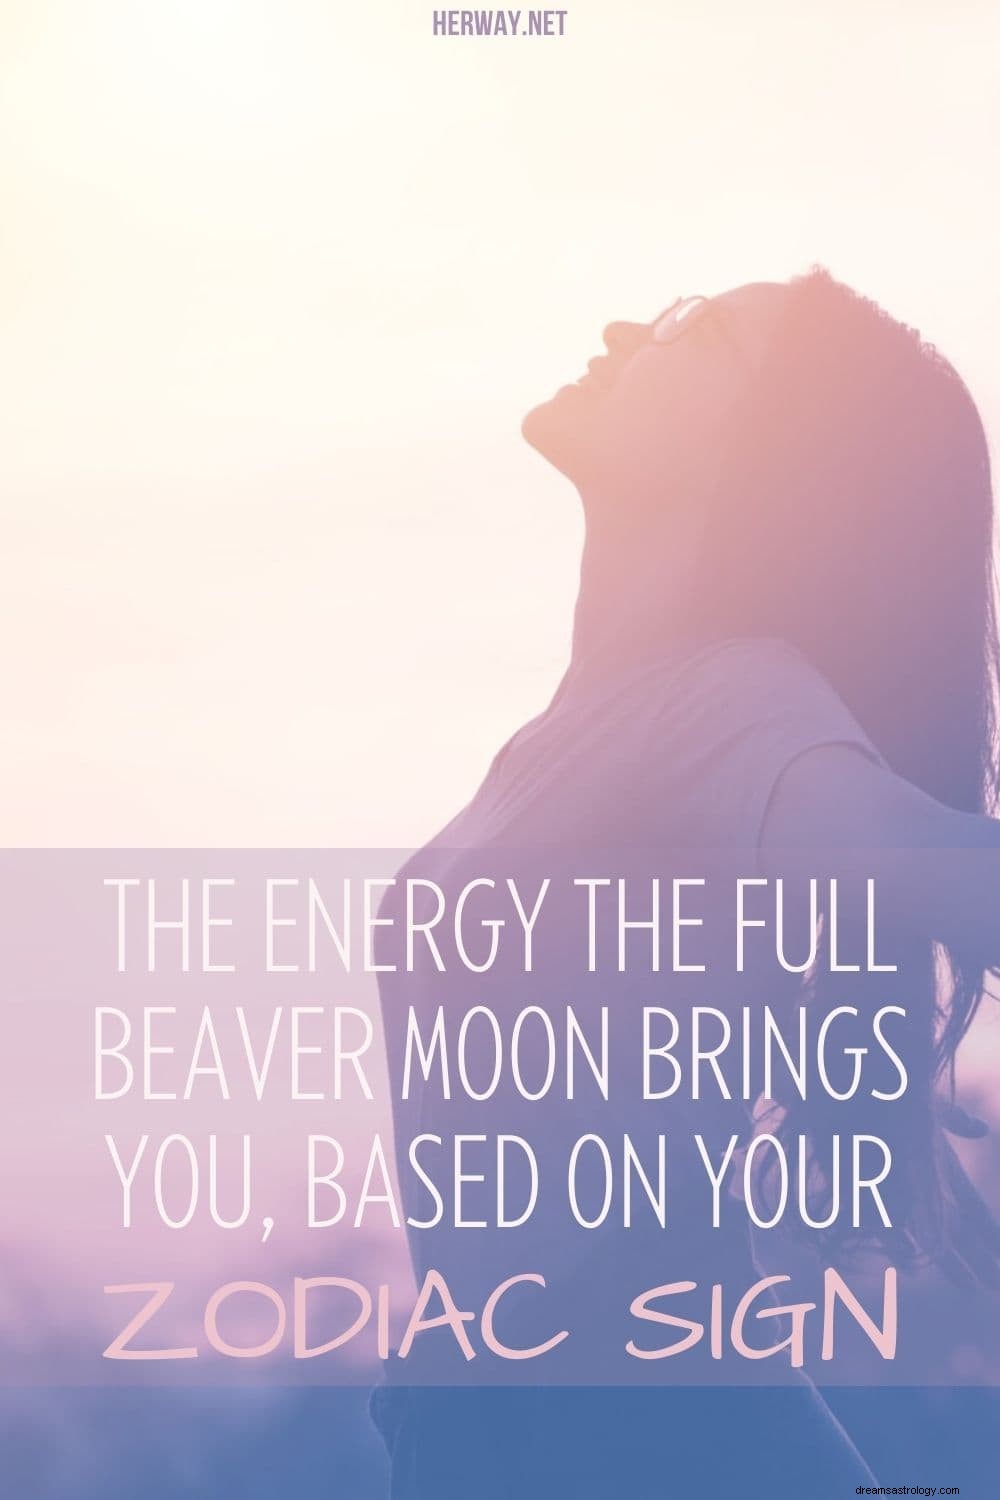 L énergie que la pleine lune du castor vous apporte, selon votre signe du zodiaque